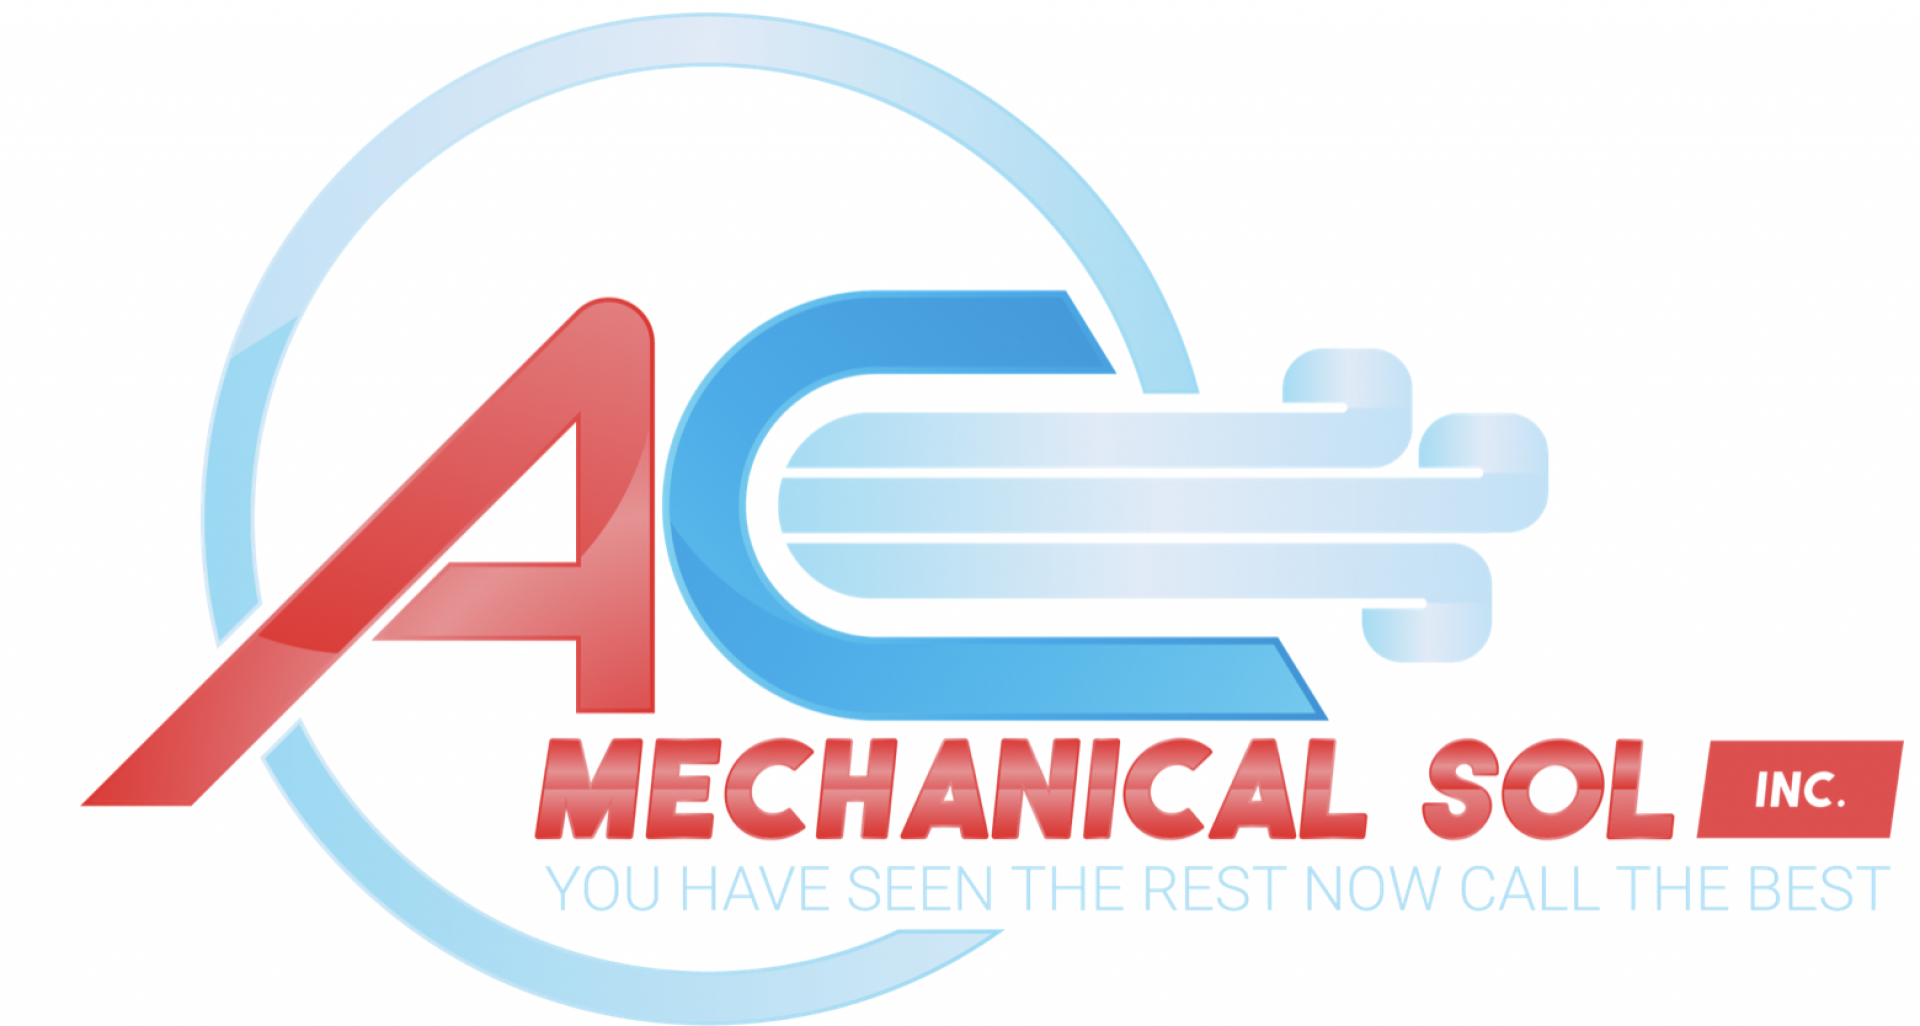 A/C Mechanical  Sol Inc company logo